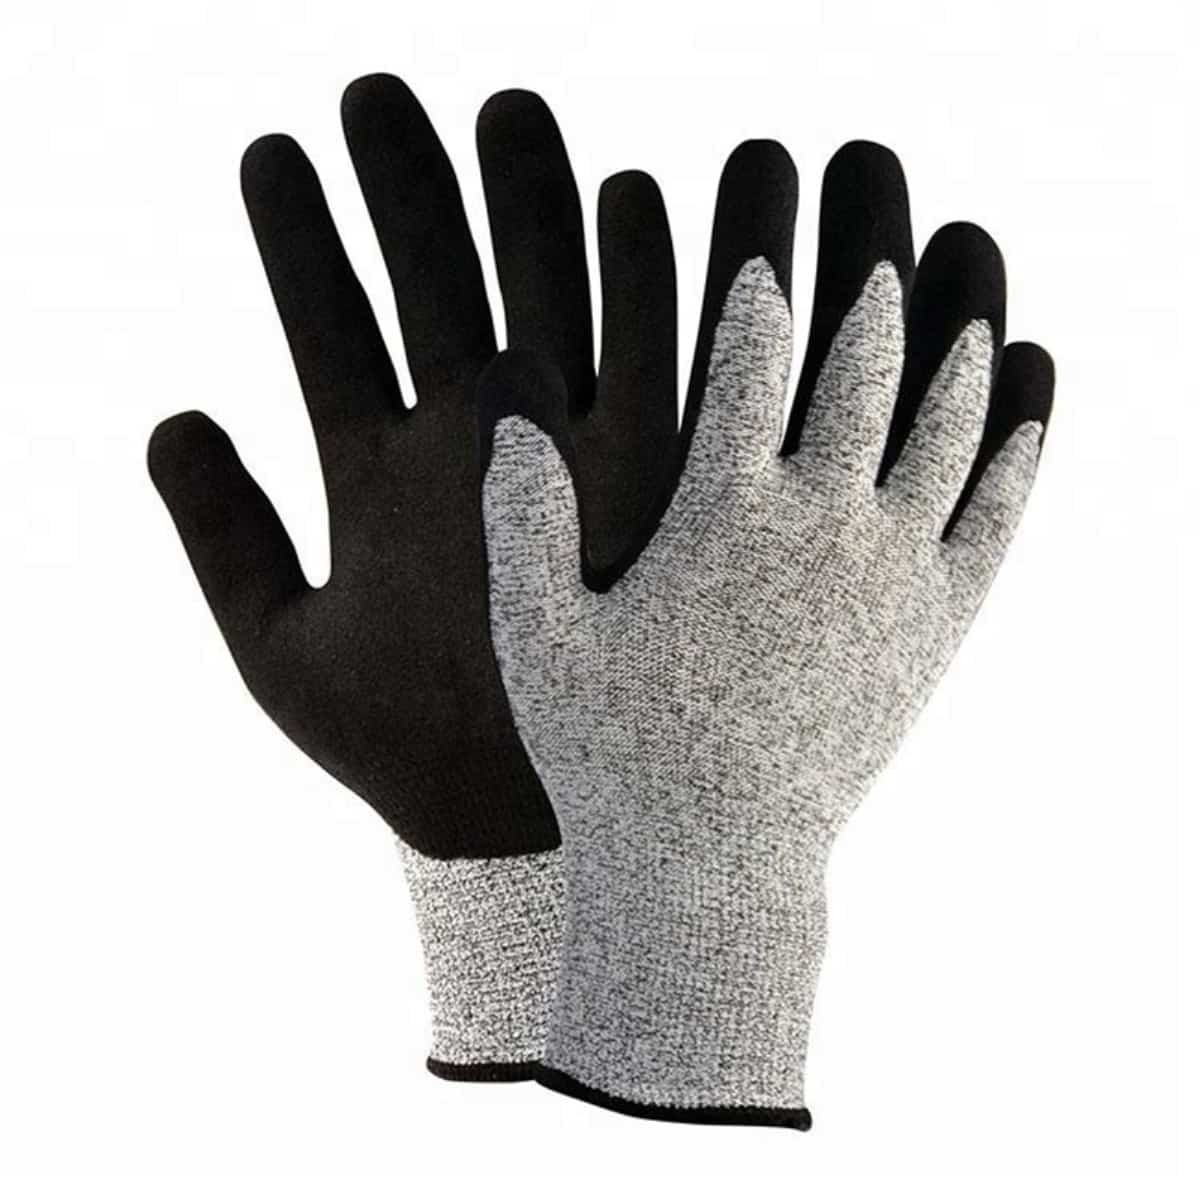 دستکش 13 گرمی HPPE مقاوم در برابر برش صنعتی با پوشش شنی نیتریل نخل